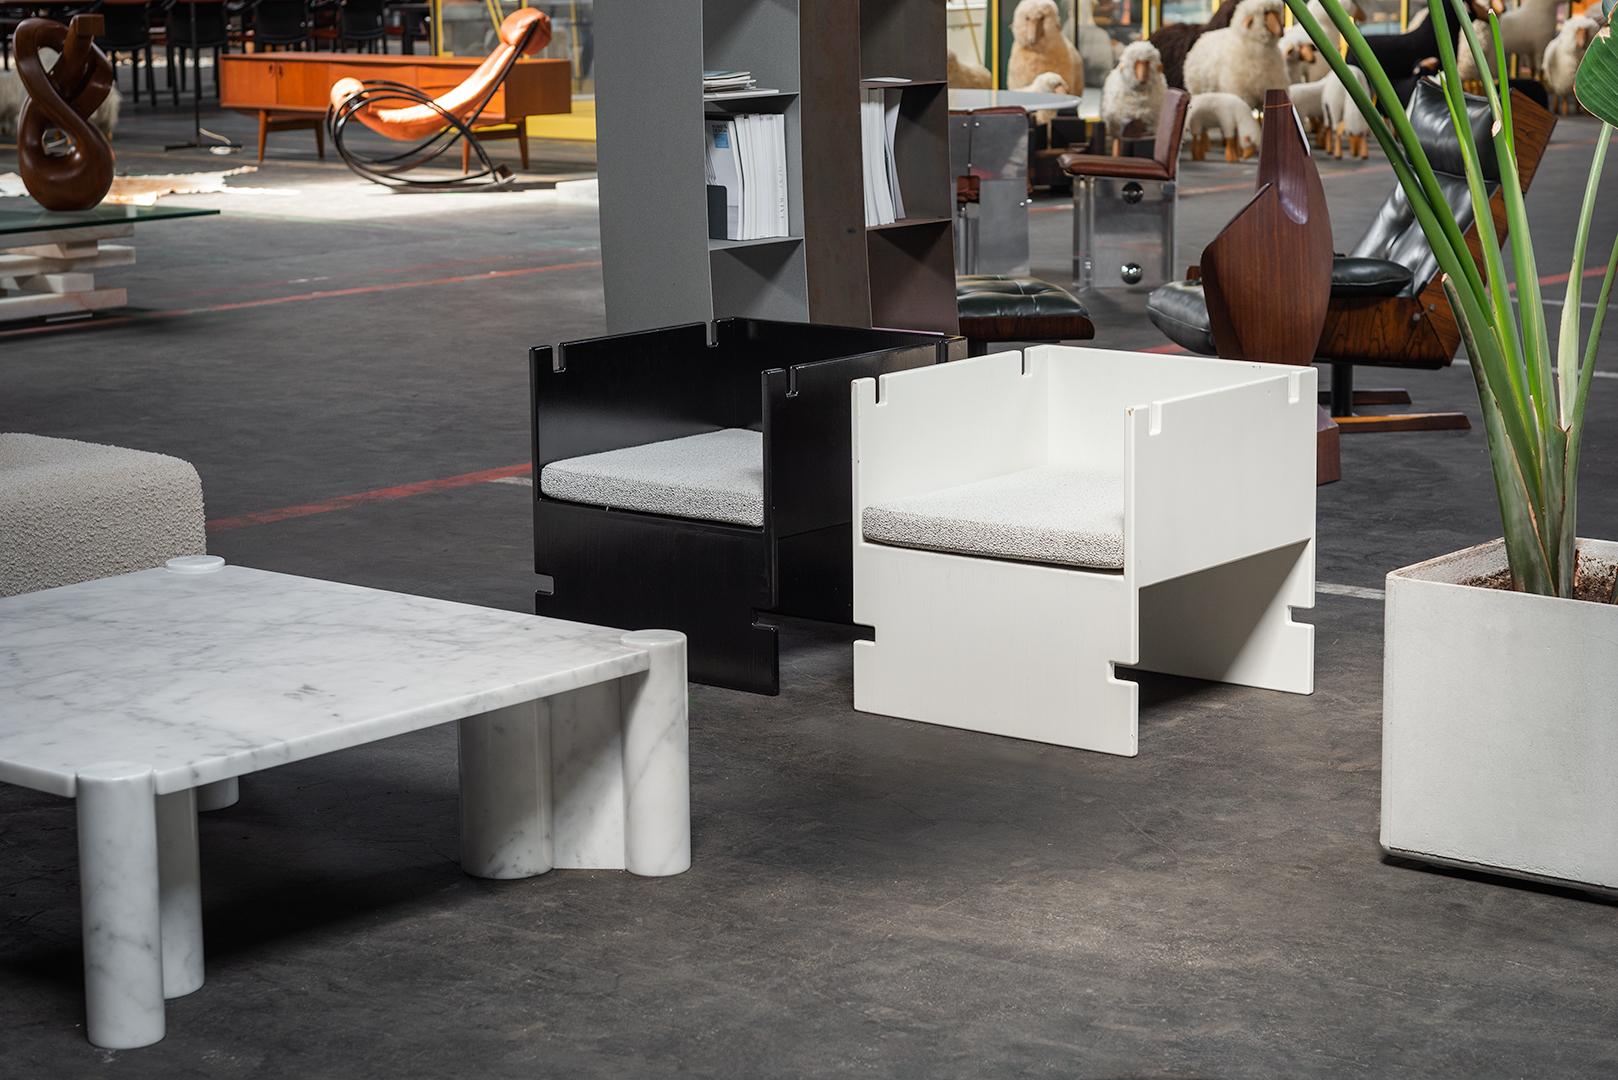 Table basse iconique Jumbo conçue par Gae Aulenti et fabriquée par Knoll International en Italie en 1964. Il est fabriqué en magnifique marbre blanc de Carrare, connu pour sa belle couleur blanche traversée par d'élégantes veines grises. Ce qui rend